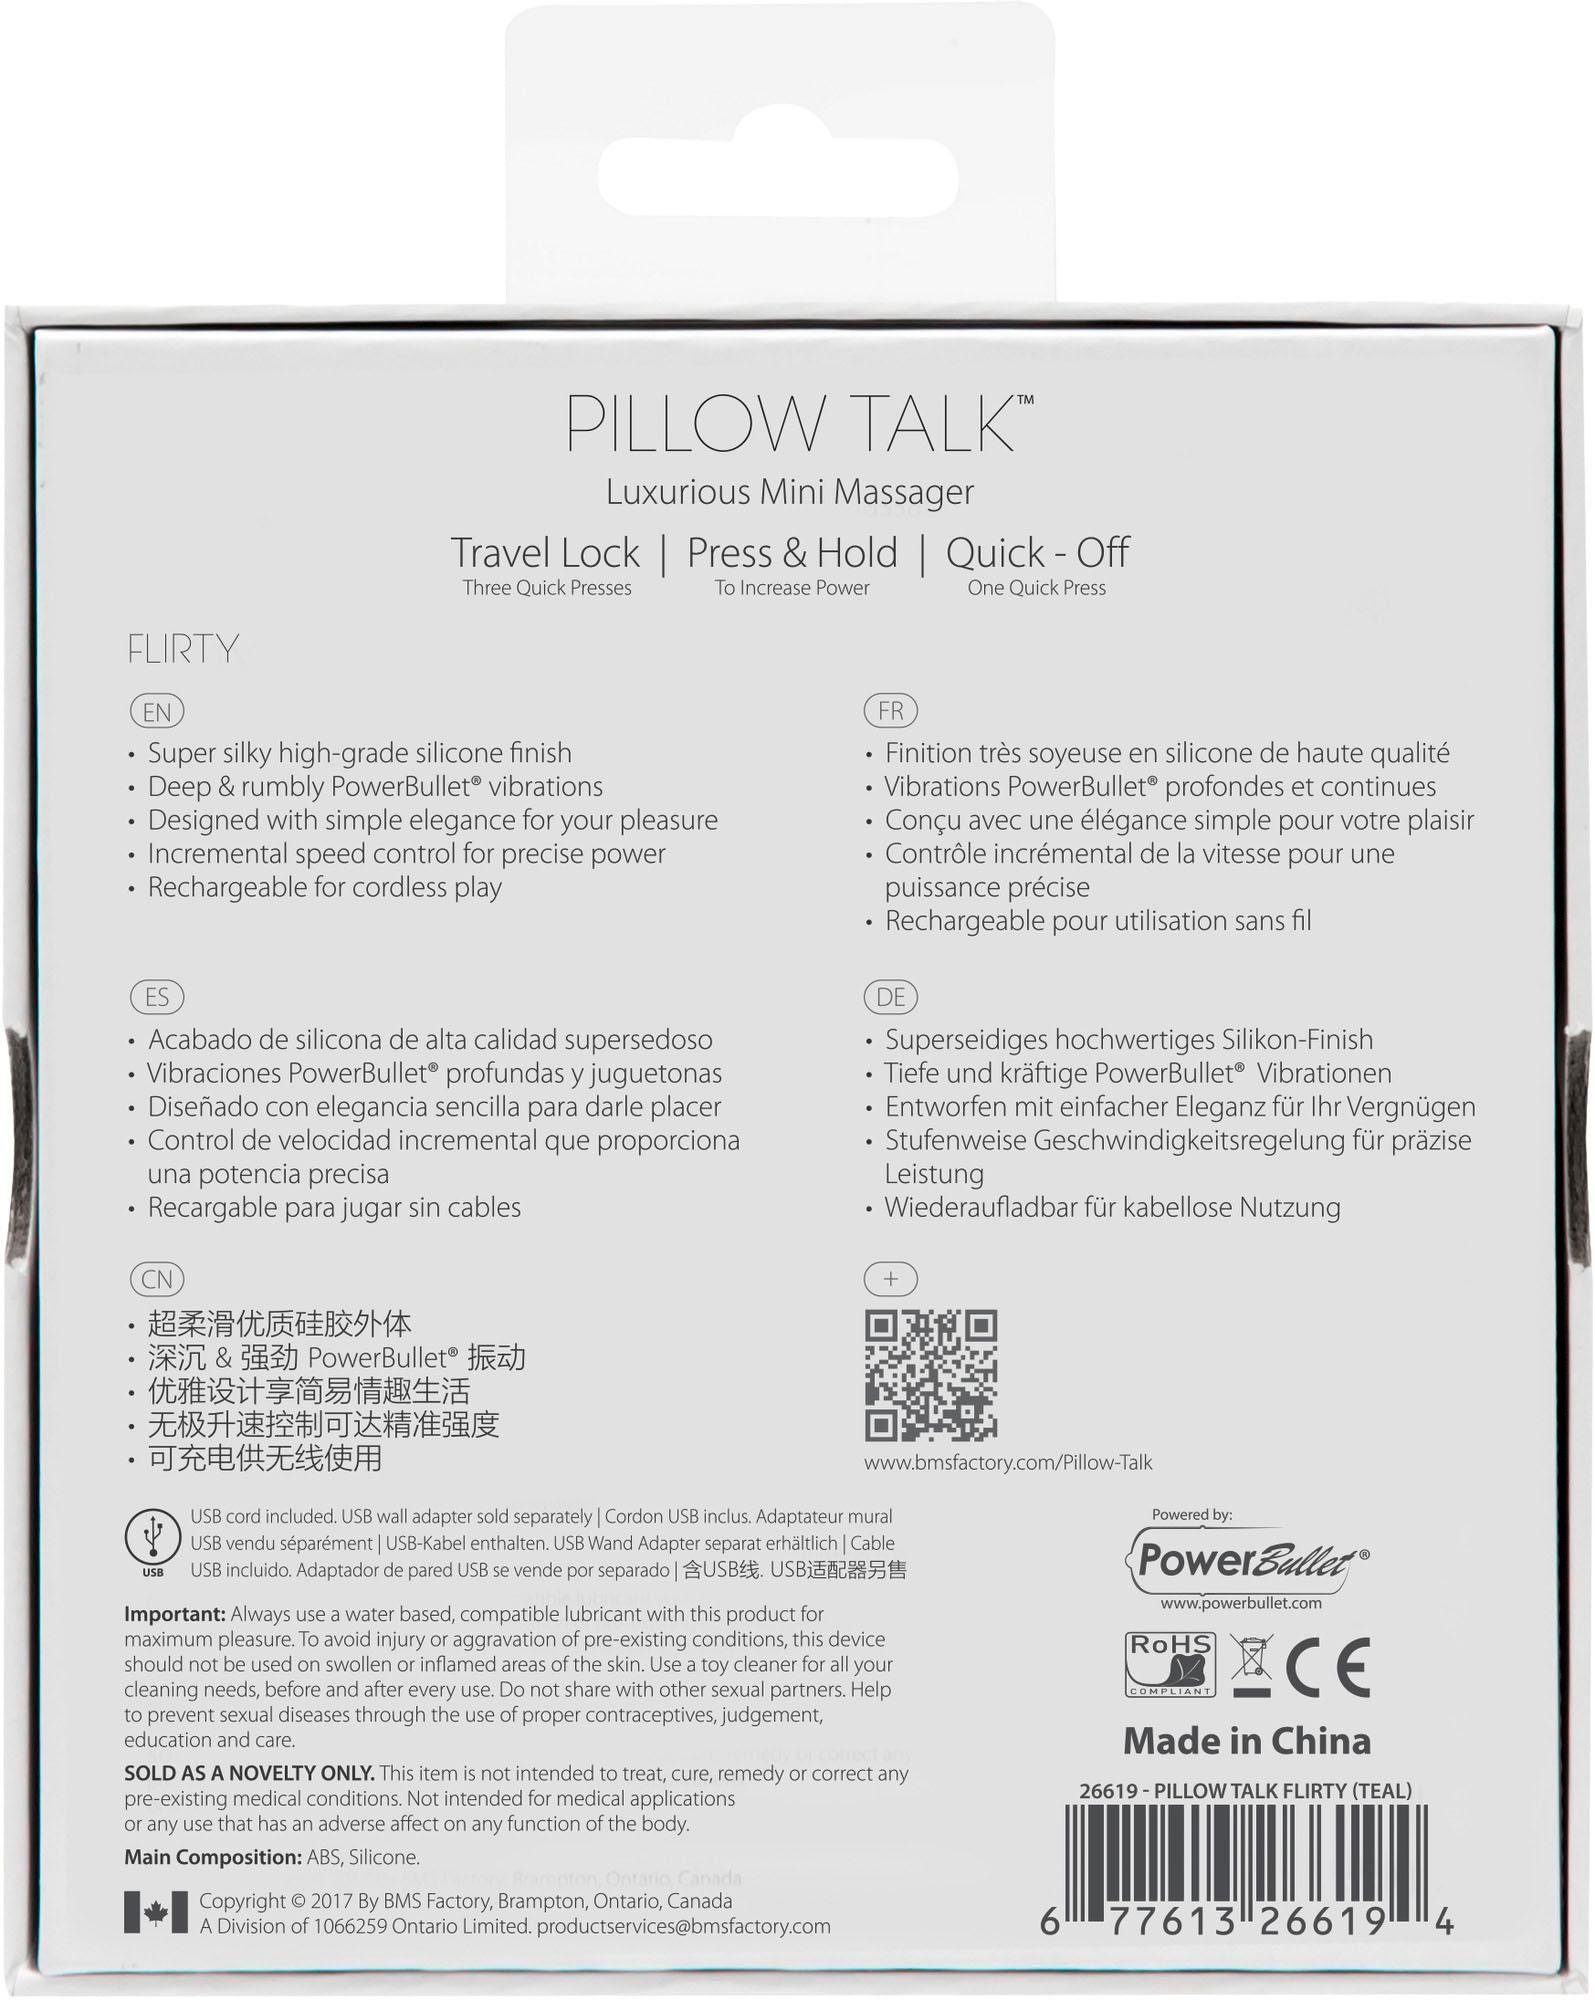 rosa Pillow Pillow Talk Flirty Minivibrator Vibrator Talk